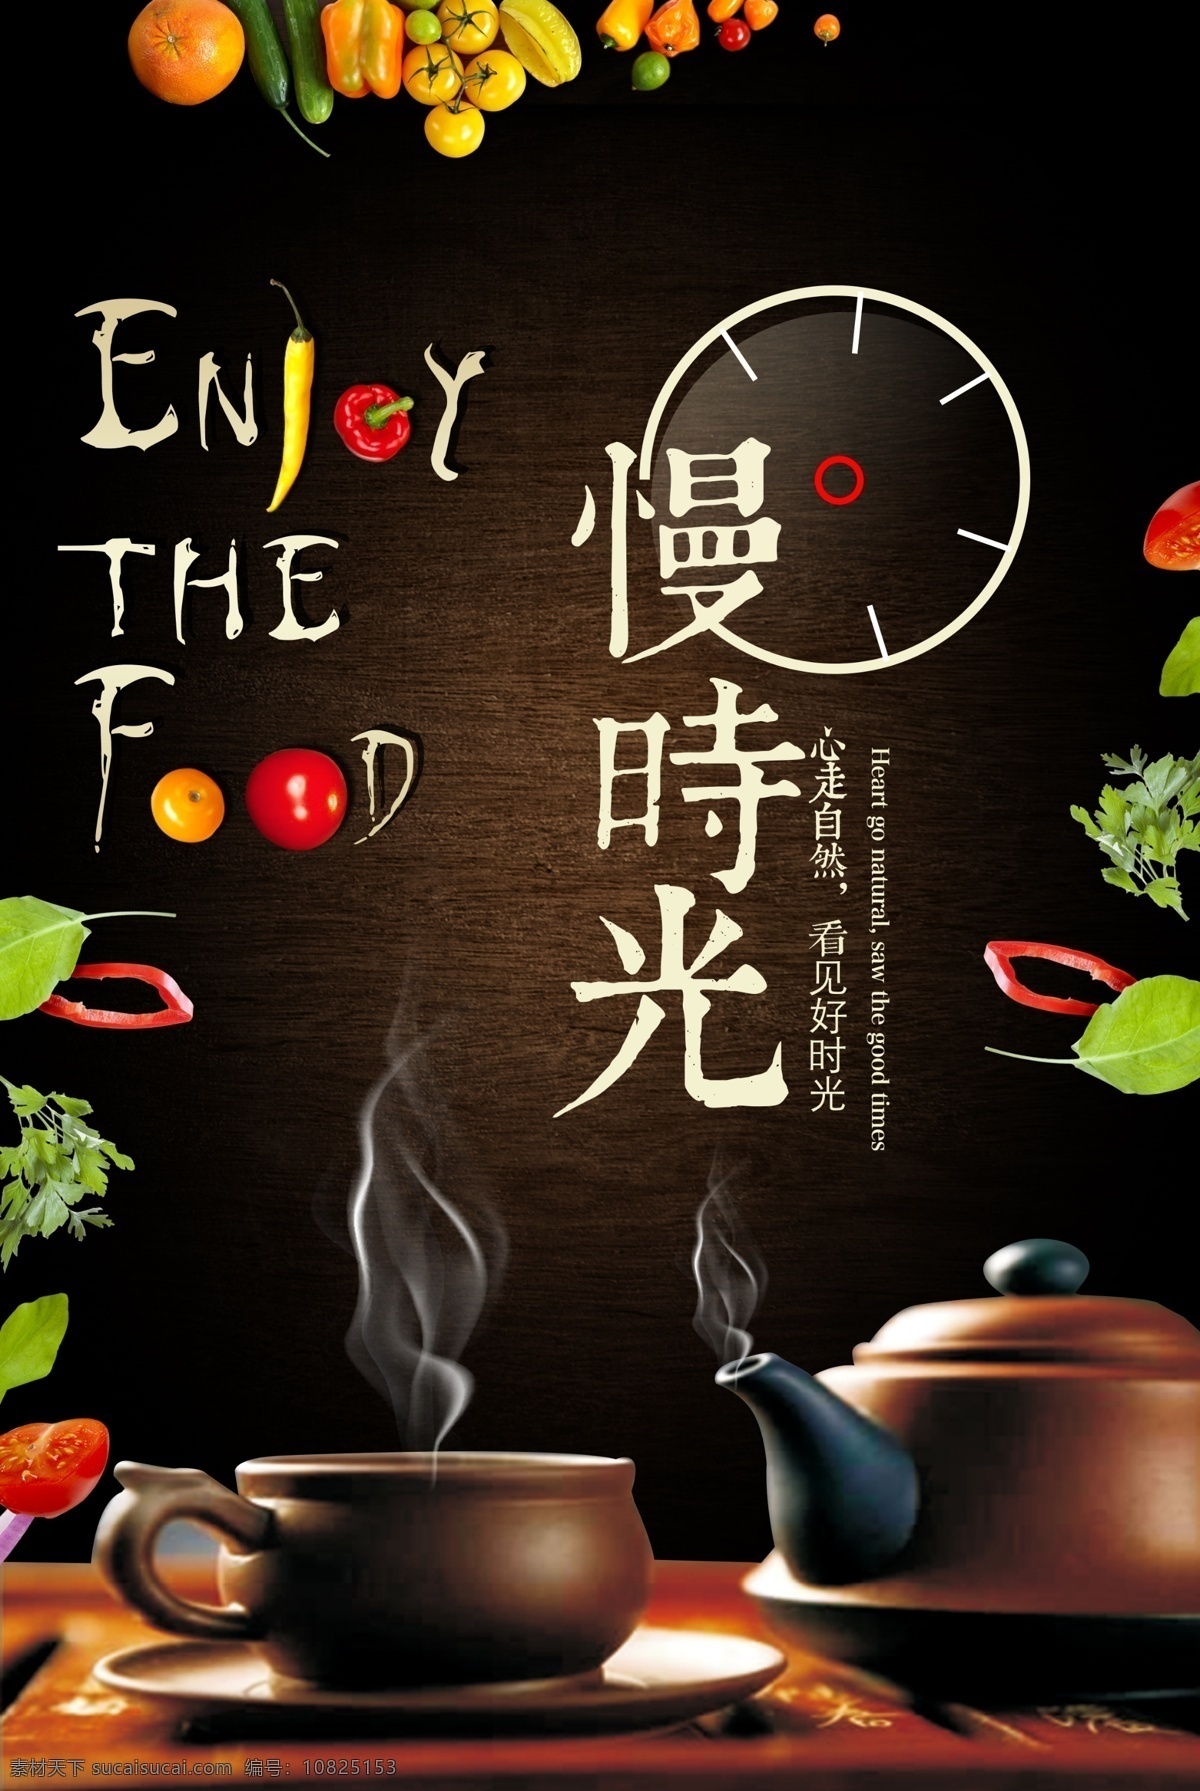 下午茶海报 茶餐厅 茶餐厅海报 慢时光 品茶 茶馆海报 茶艺海报 海报